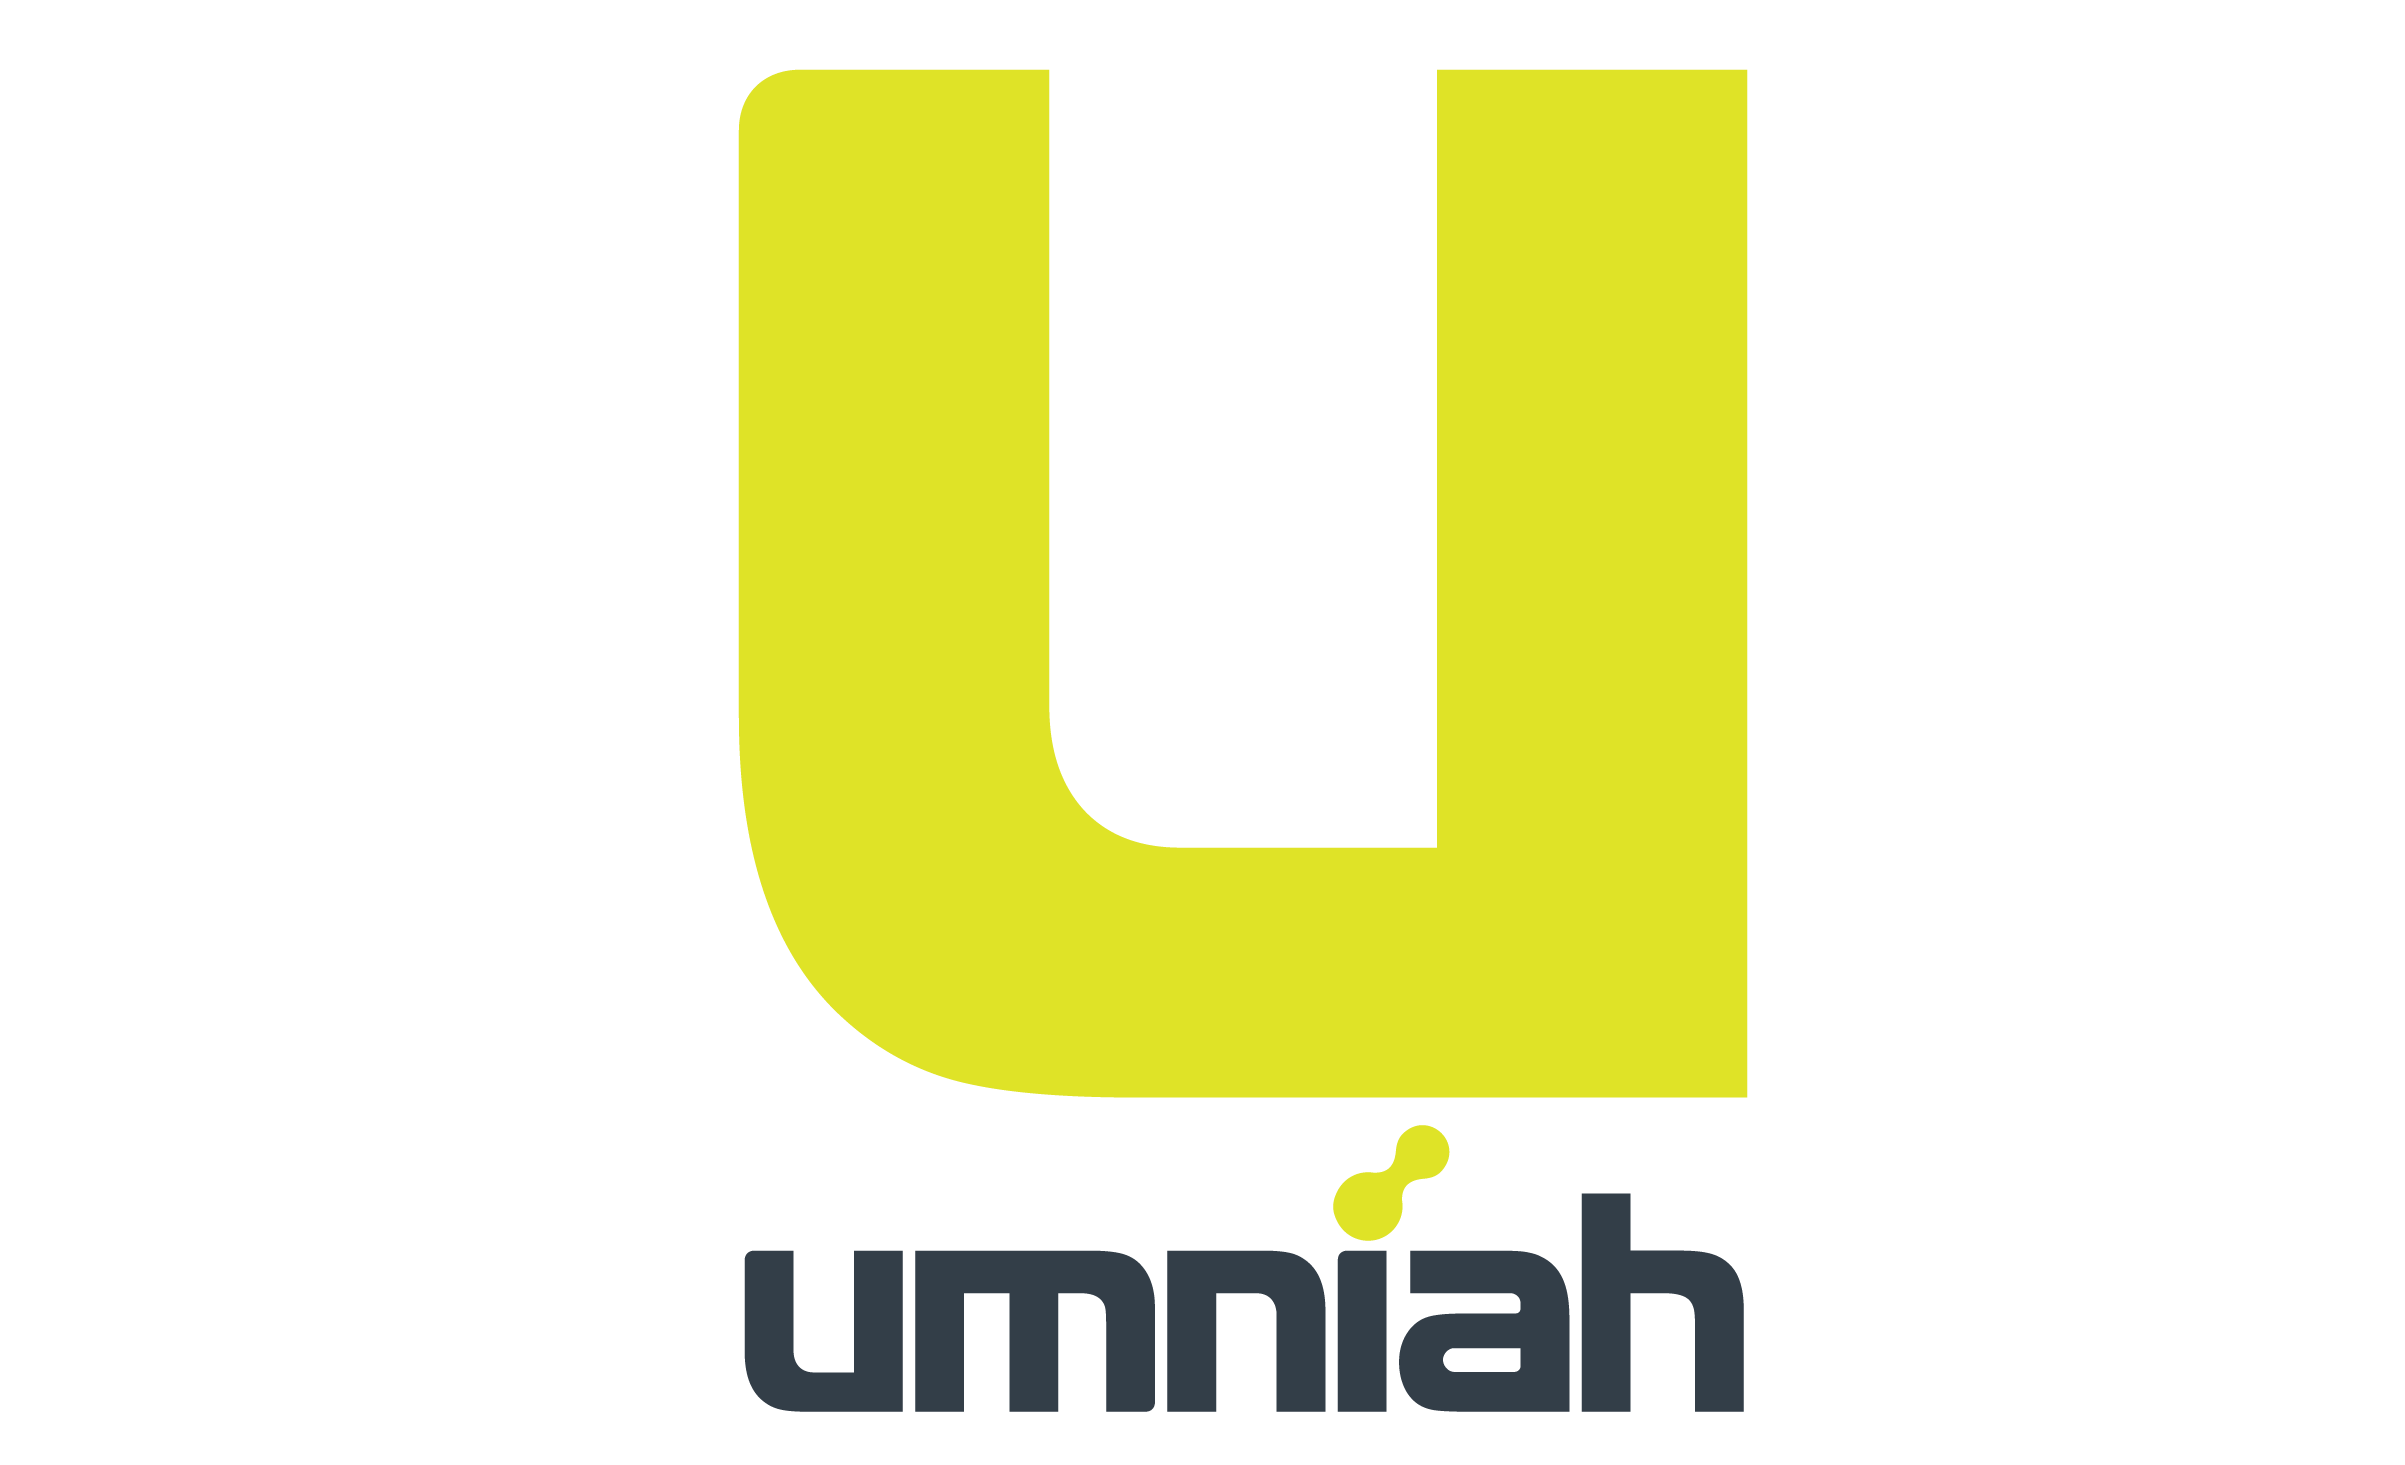 Umniah shop